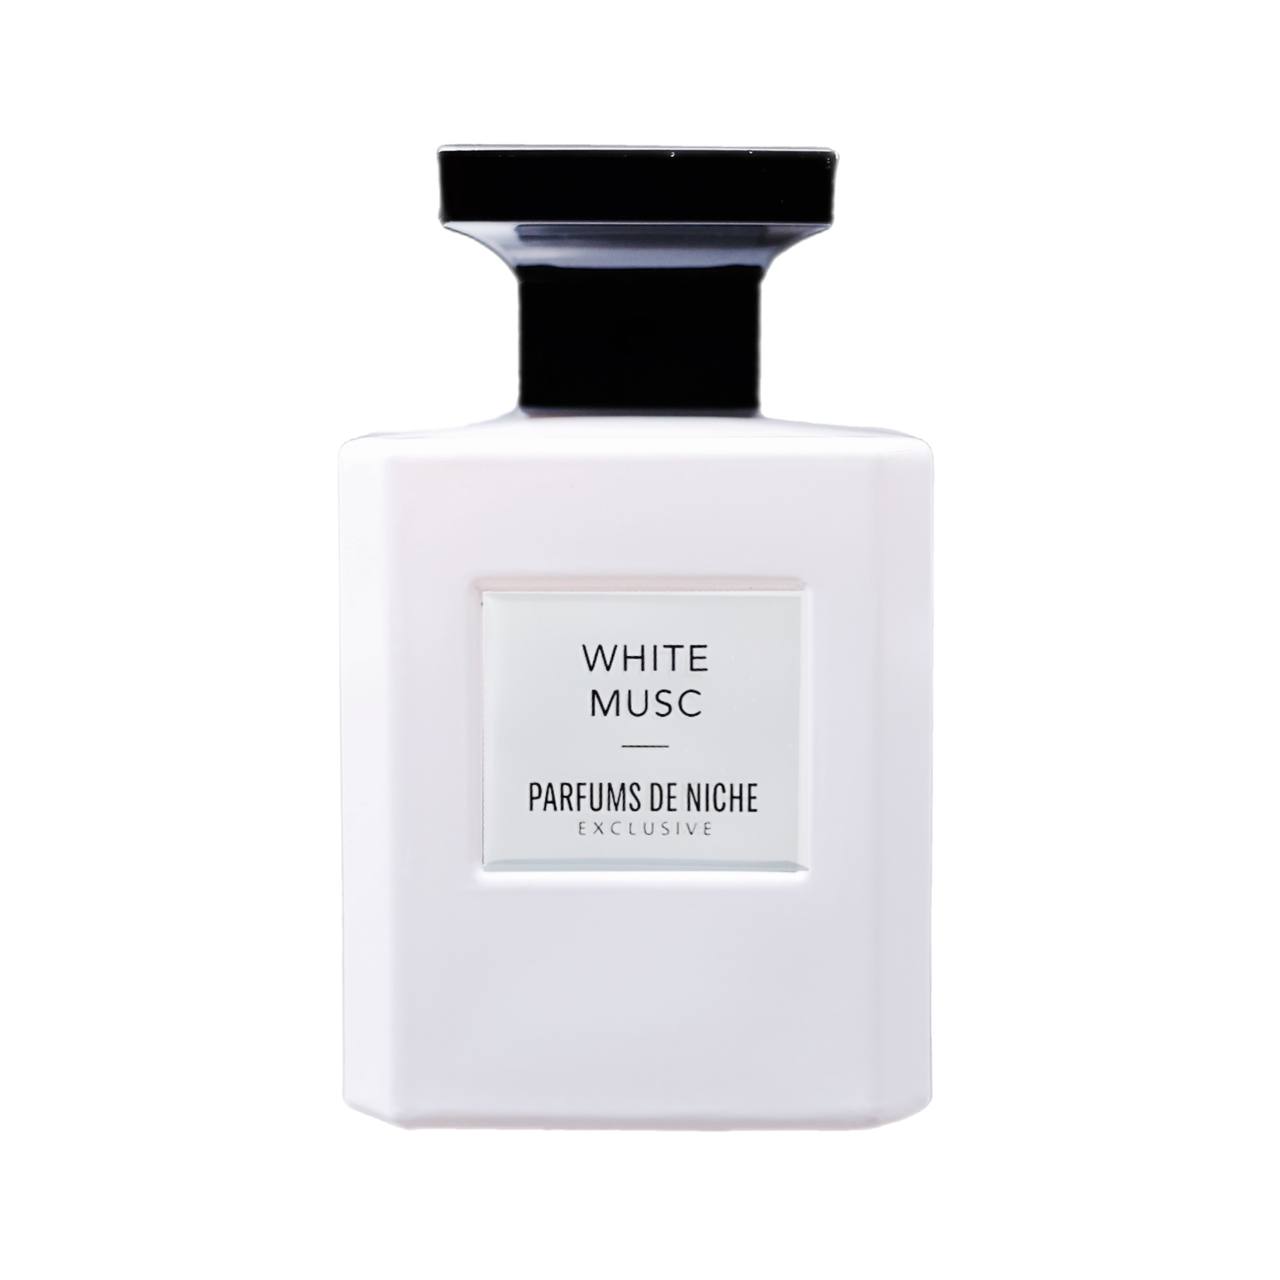 White Musc - Parfums de Niche Paris 100 ml